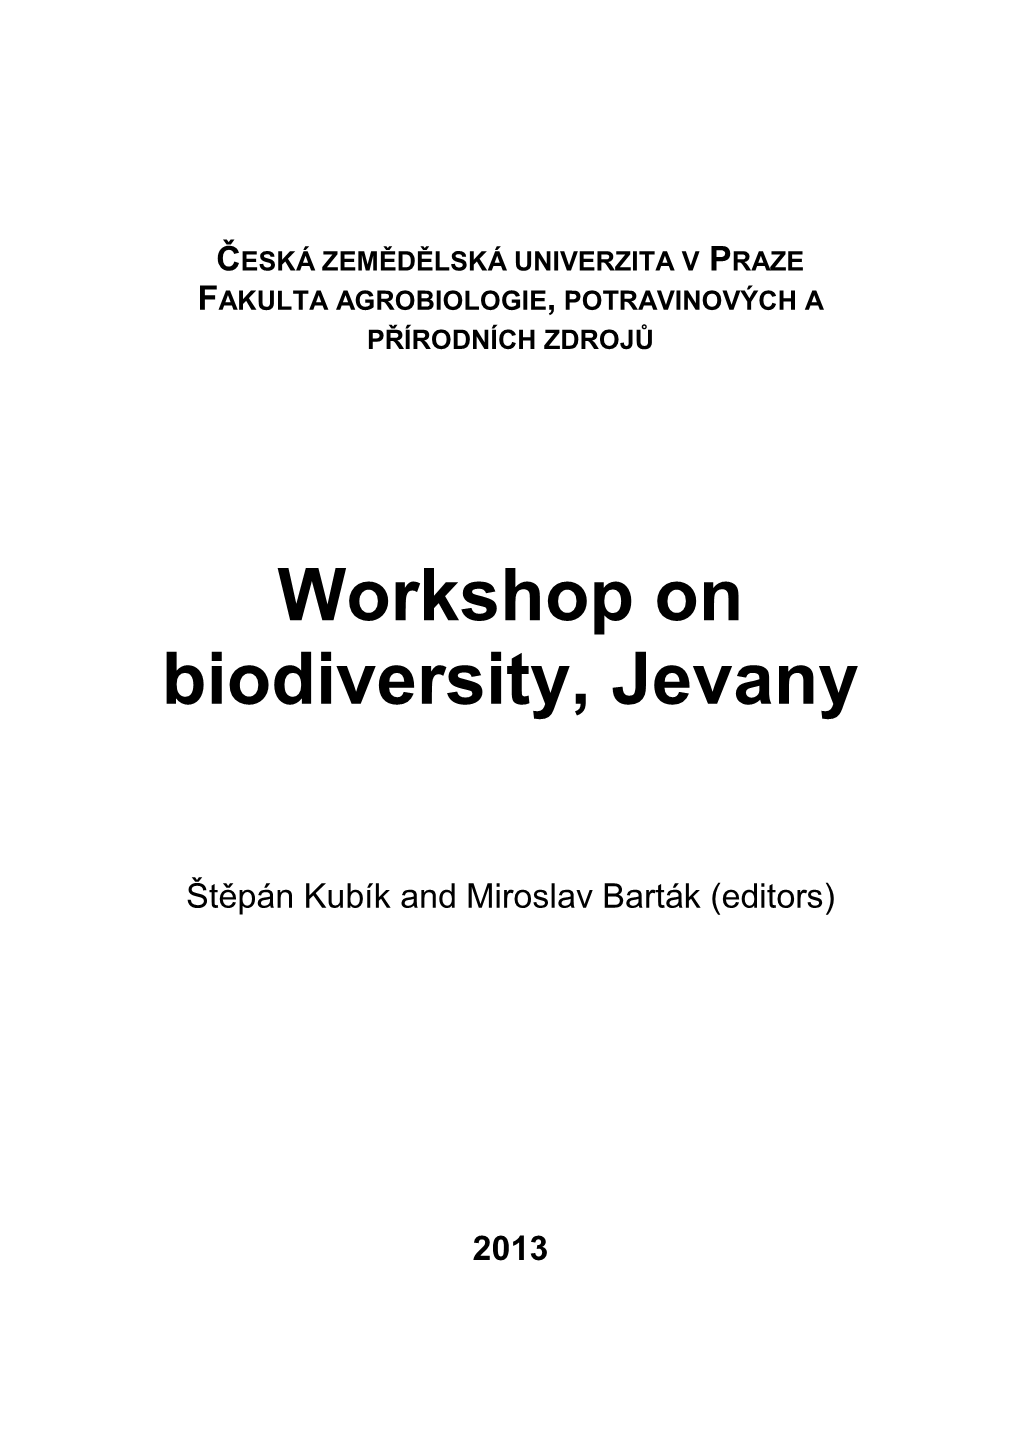 Workshop on Biodiversity, Jevany